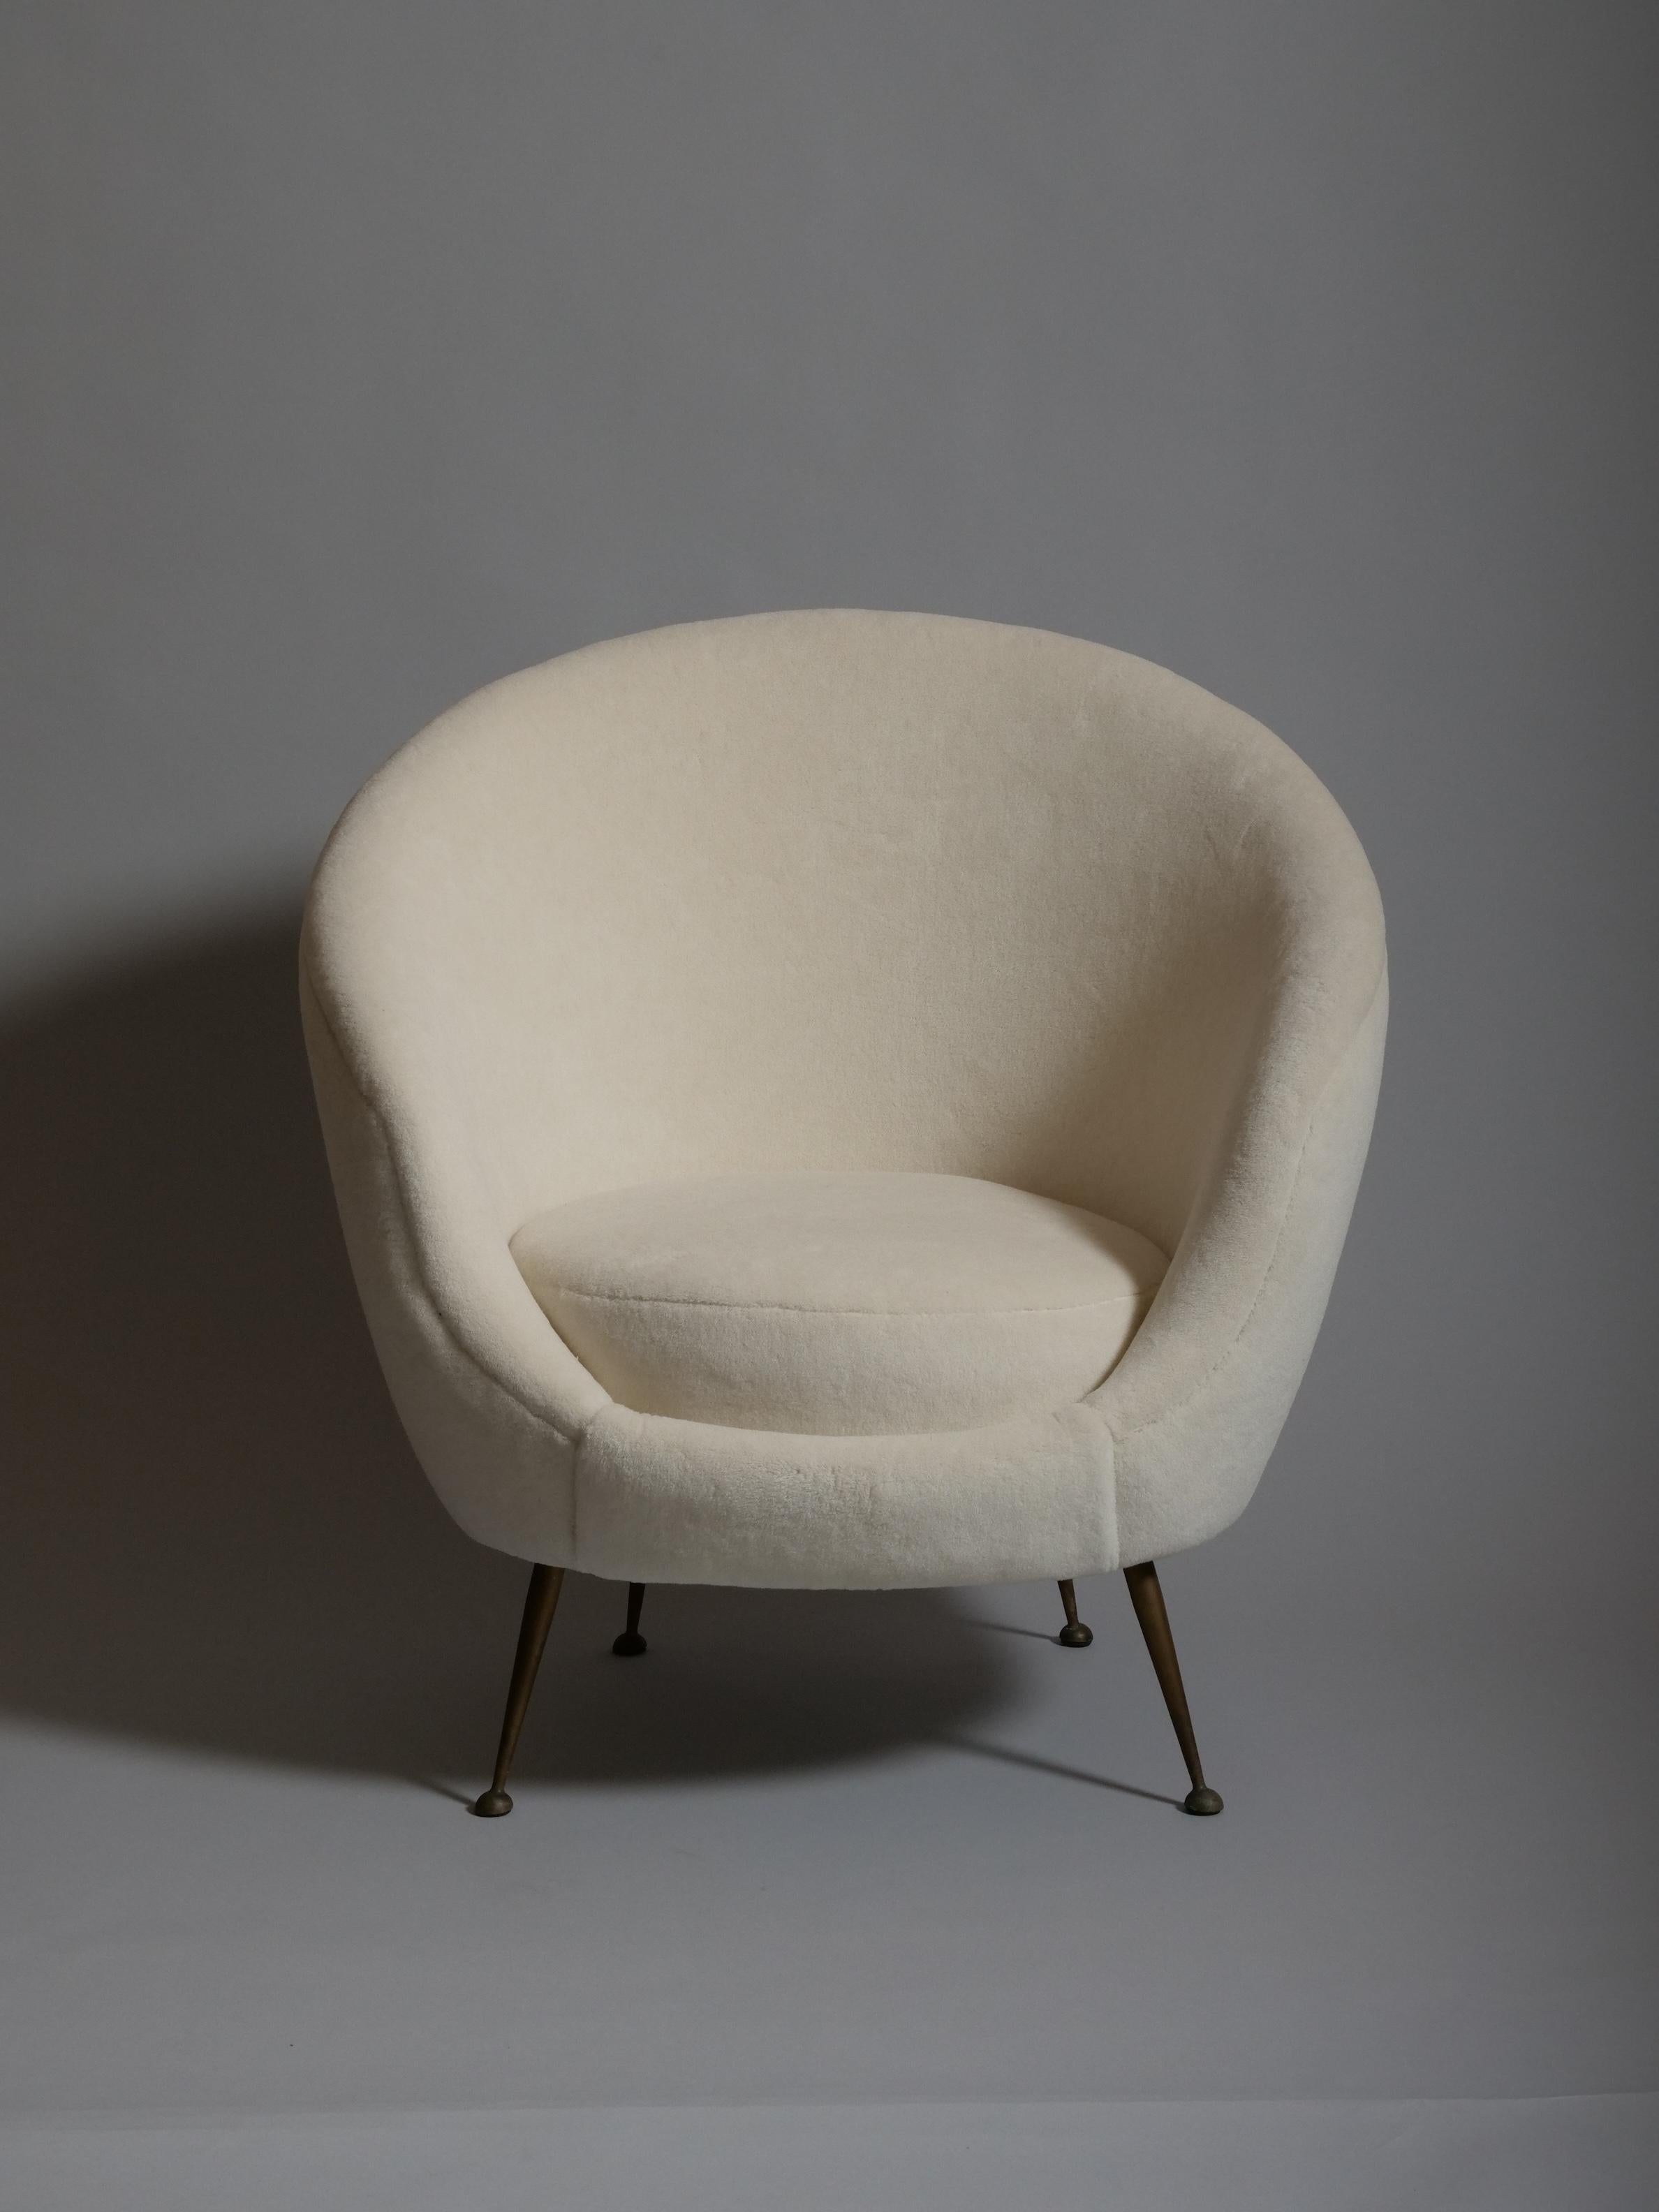 Brass Pair Italian mid century egg shape chairs. Re upholstered in Alpaca wool velvet For Sale